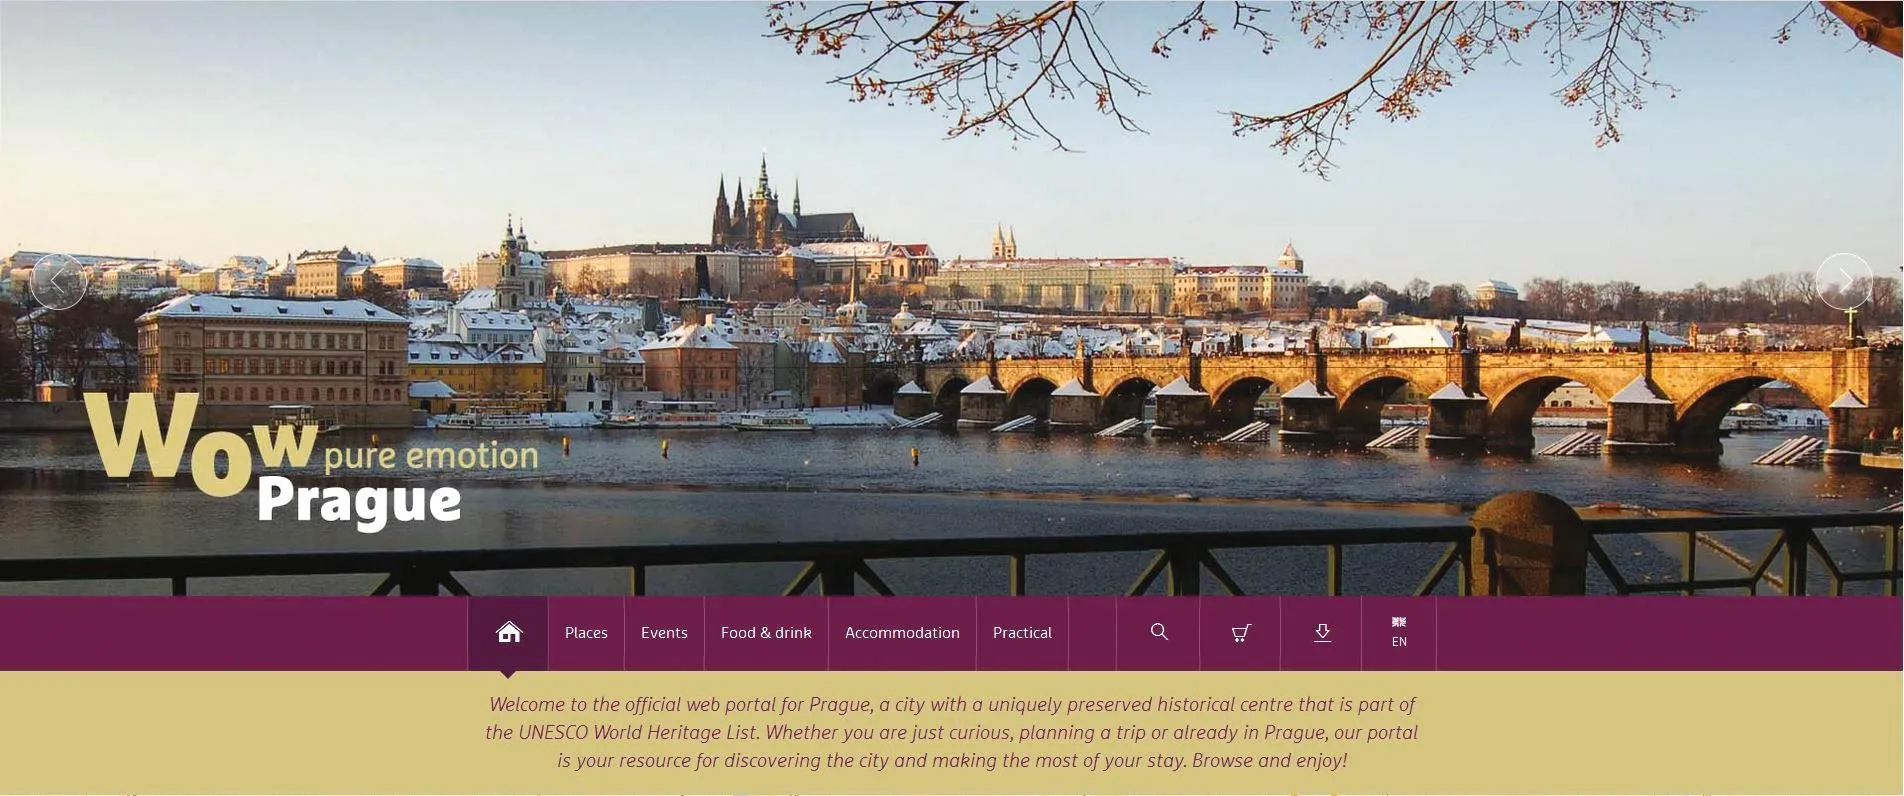 Extrait de la page d'accueil du site internet européen de l'office du tourisme de Prague, www.prague.eu.